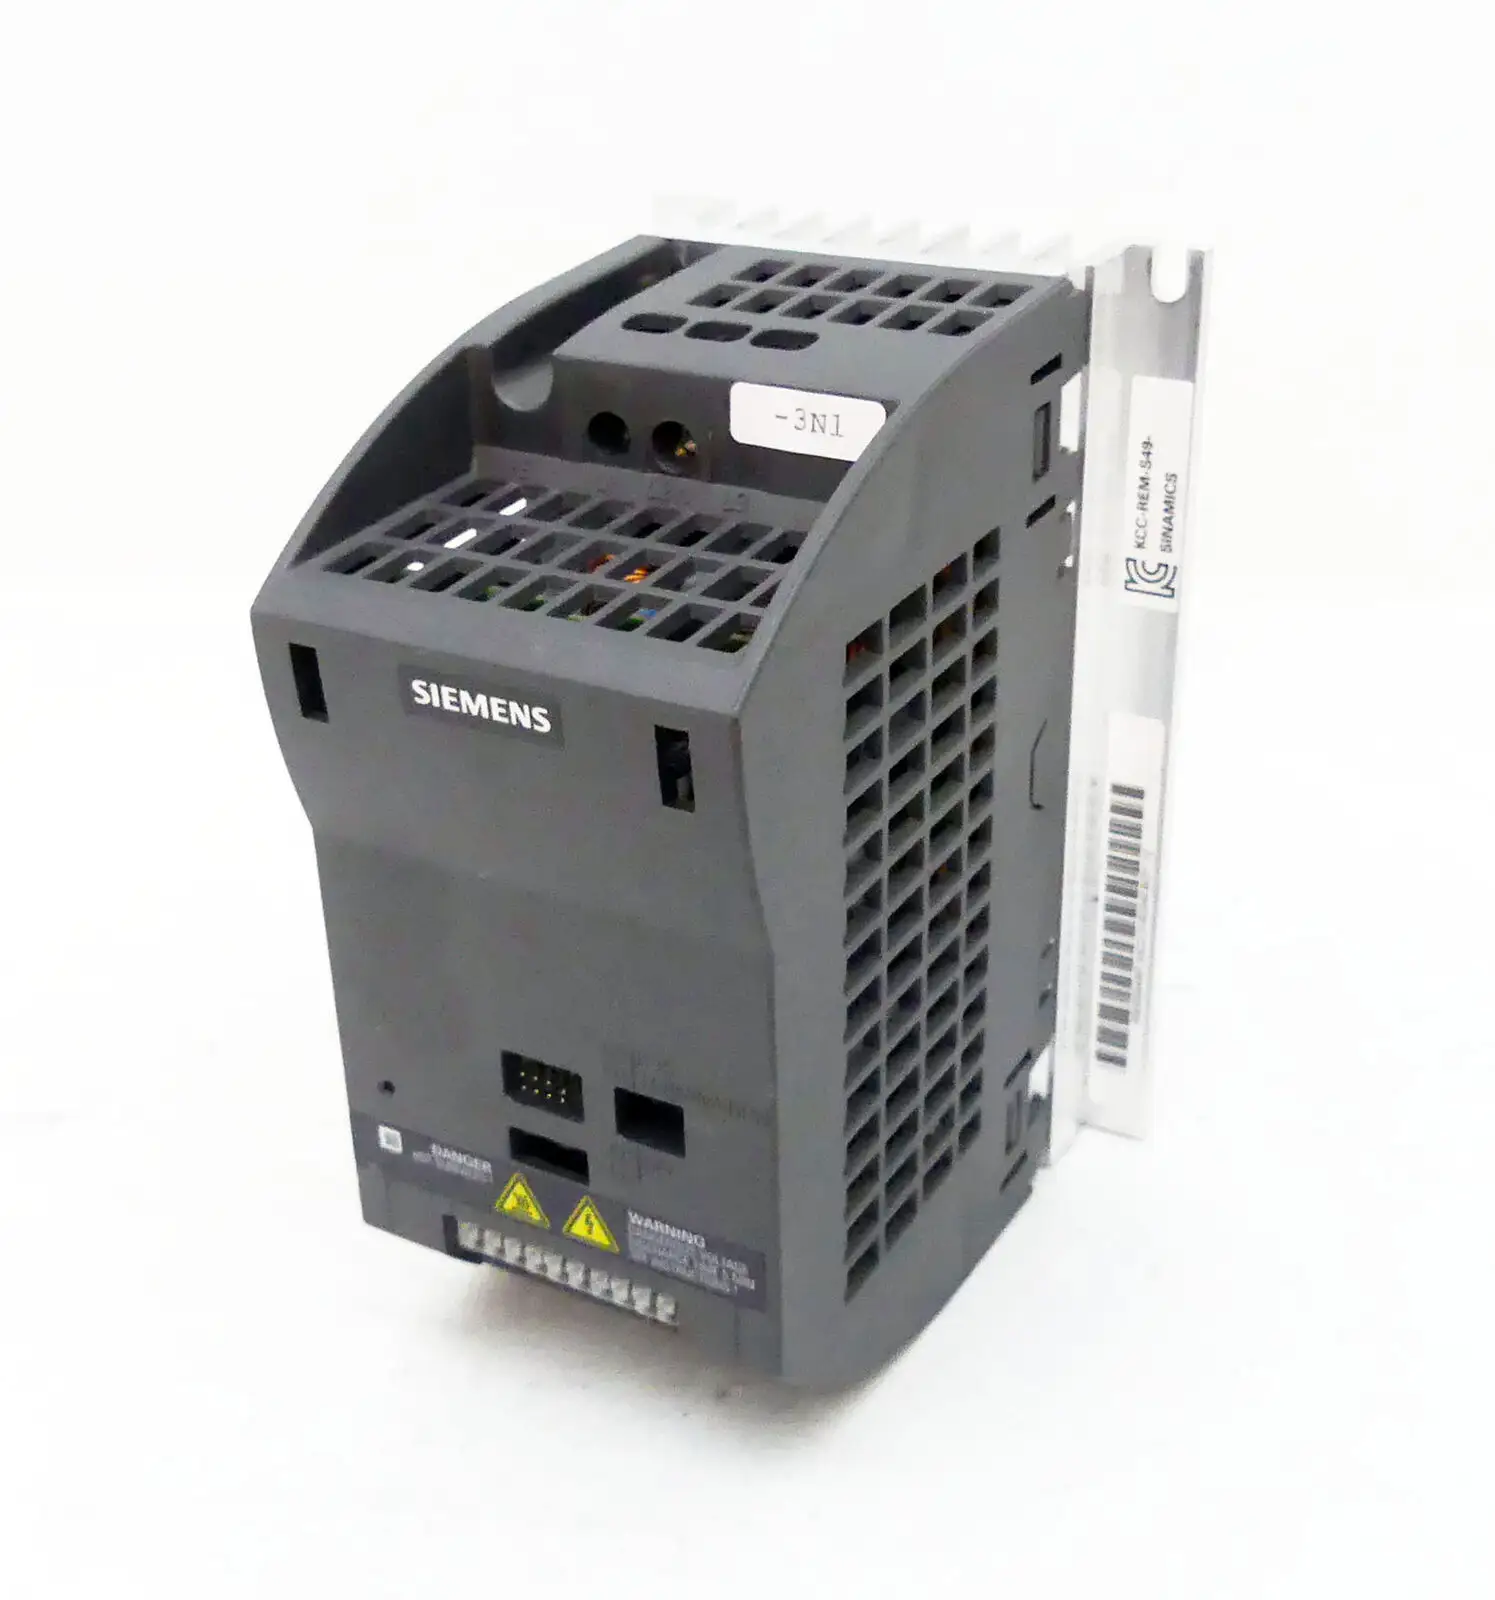 Siemens оригинальный 6SL3211-0AB21-5UB1 SINAMICS G110-CPM110 привод переменного тока 1.5KW преобразователь частоты 6SL3211-0AB21-5AB1